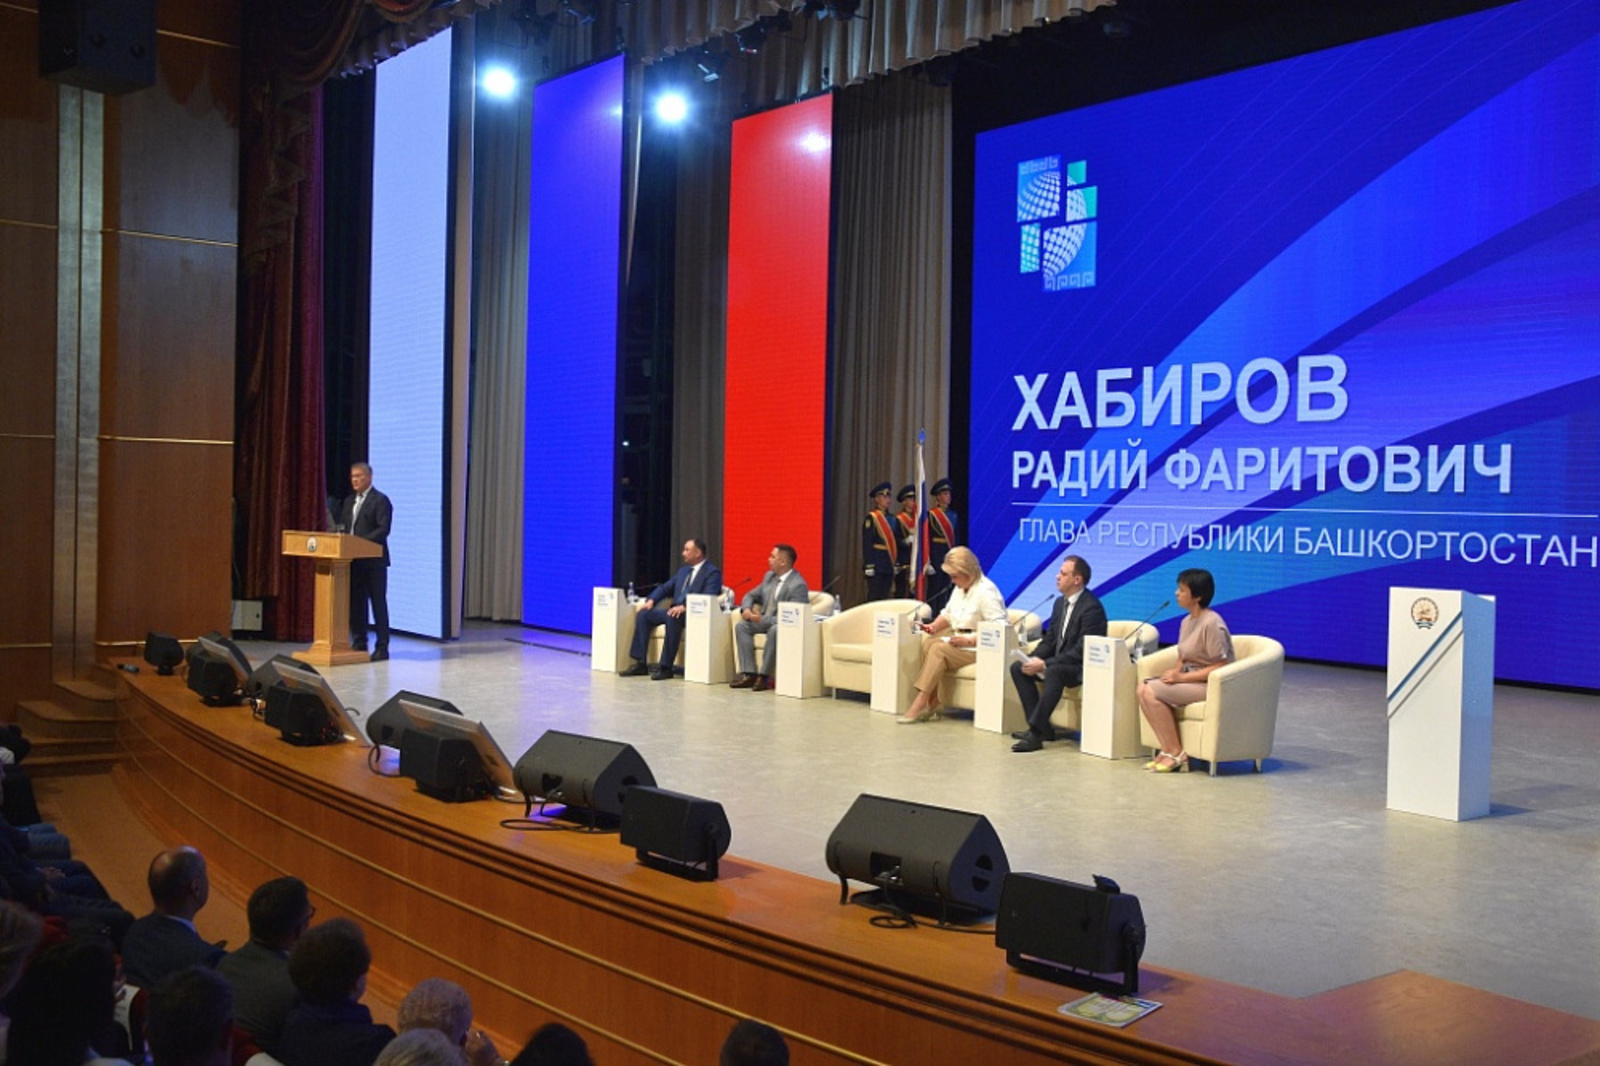 Радий Хабиров: «Выпускники школ Башкортостана сегодня становятся настоящими героями»